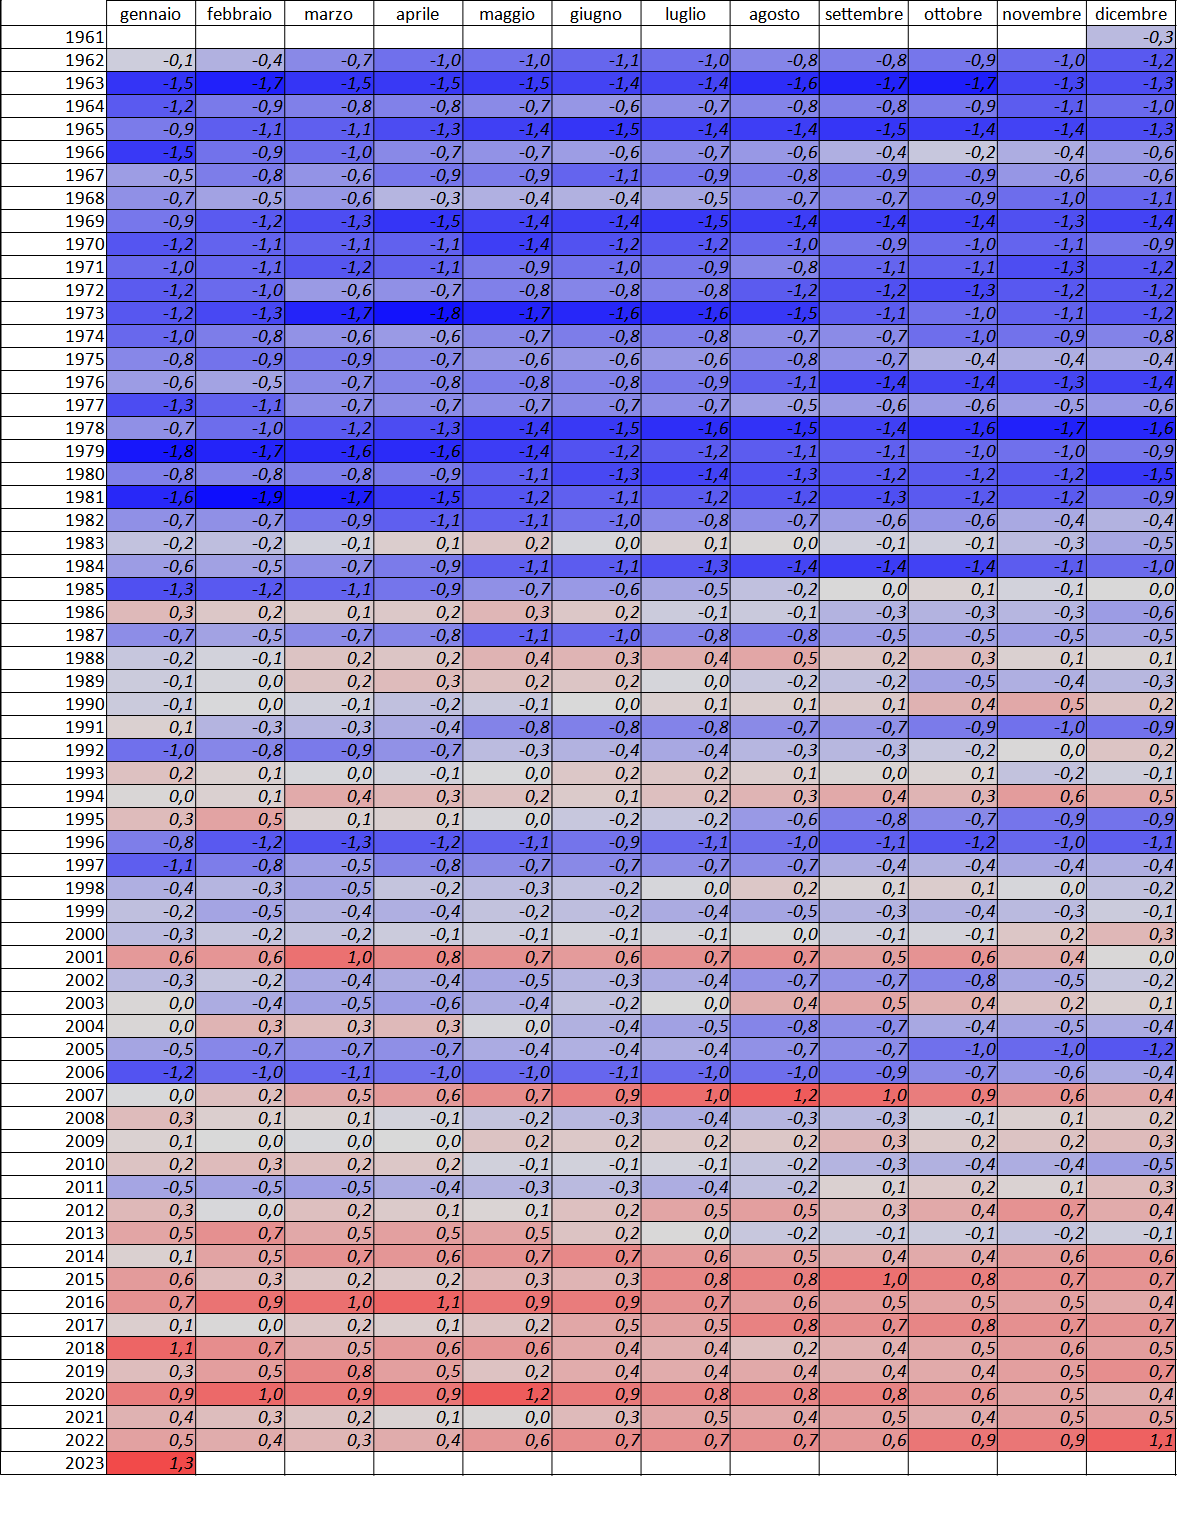 Meteo AMAP Regione Marche - tabella temperatura ultimi 12 mesi